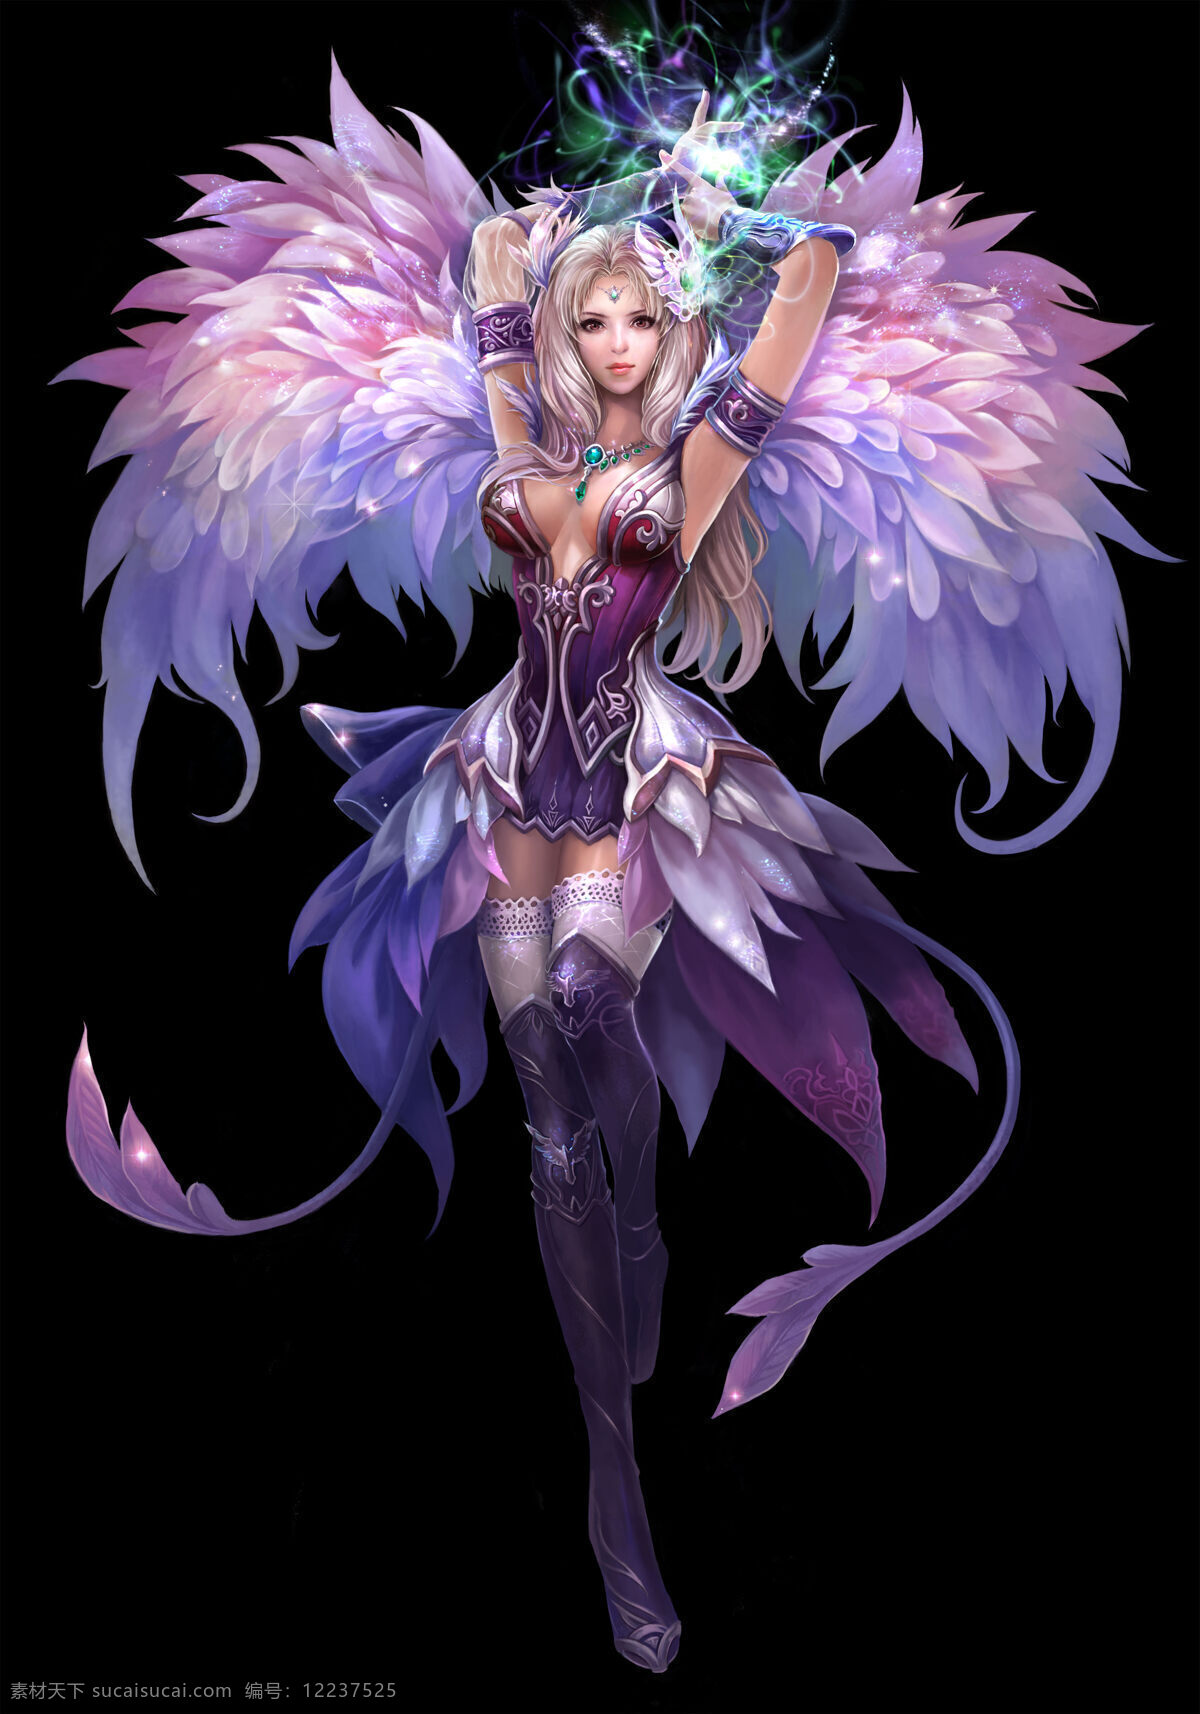 天使的翅膀 天使 翅膀 手绘 漫画 人物 游戏 高清 绘画书法 文化艺术